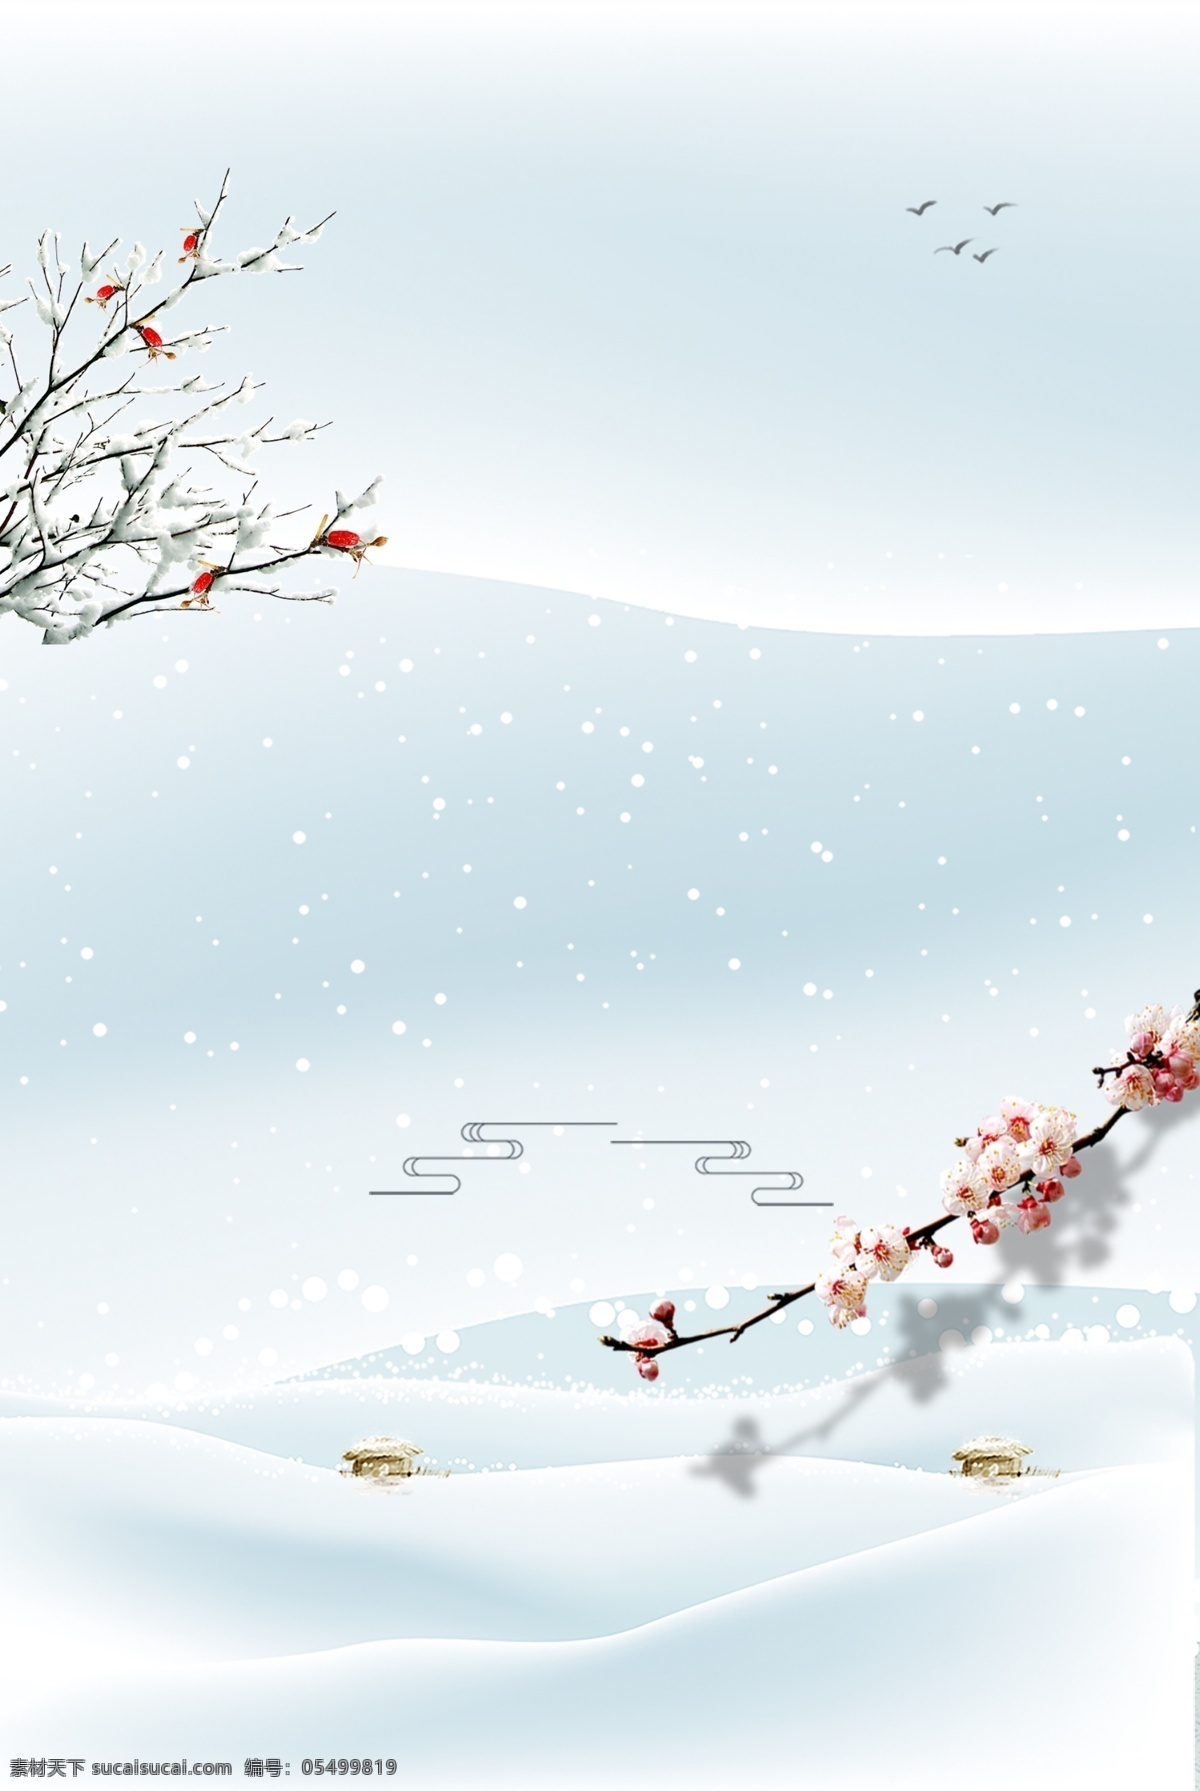 天空 下雪 冬至 展板 背景 雪花 圣诞树 冬至素材 冬季 蓝色 冬至快乐 冬至来了 冬至节